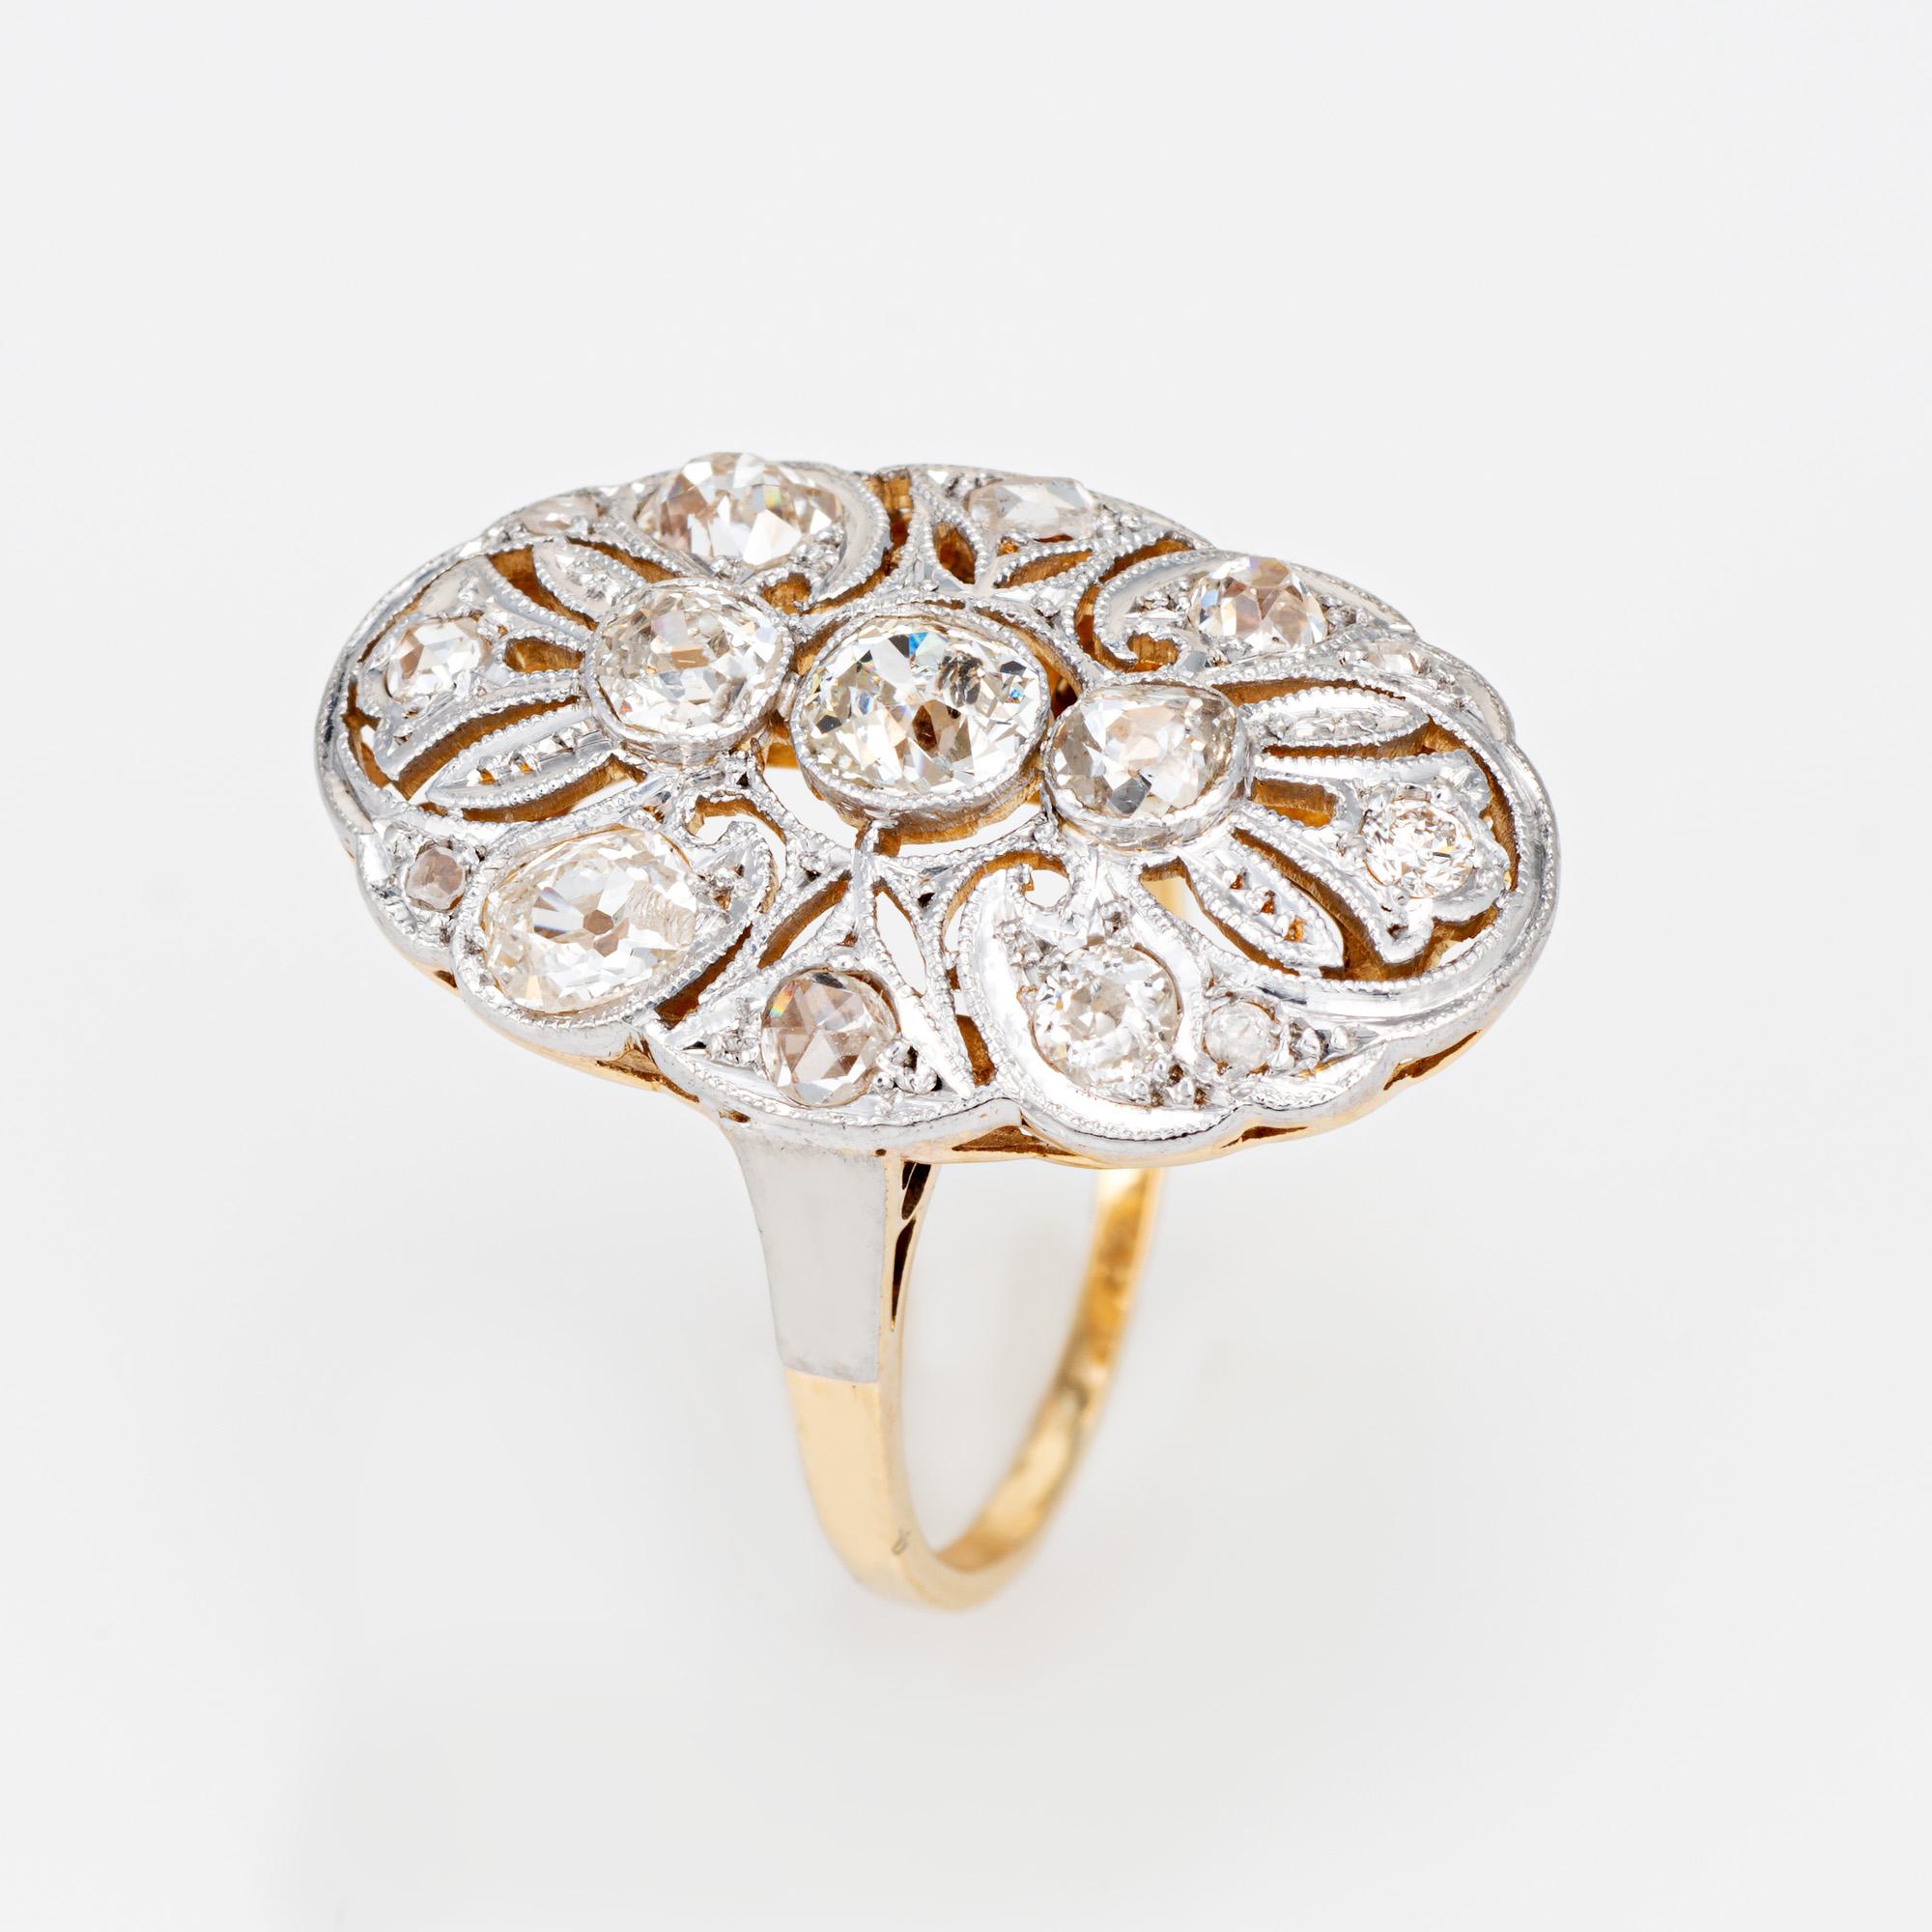 Fein detaillierter antiker Jugendstil-Diamantring (um 1910) aus 18 Karat Gelbgold und 900er Platin. 

Die Diamanten im alten Minen- und Rosenschliff haben insgesamt schätzungsweise 1 Karat (geschätzte Farbe K-L und Reinheit SI2-I2).   

Der schöne